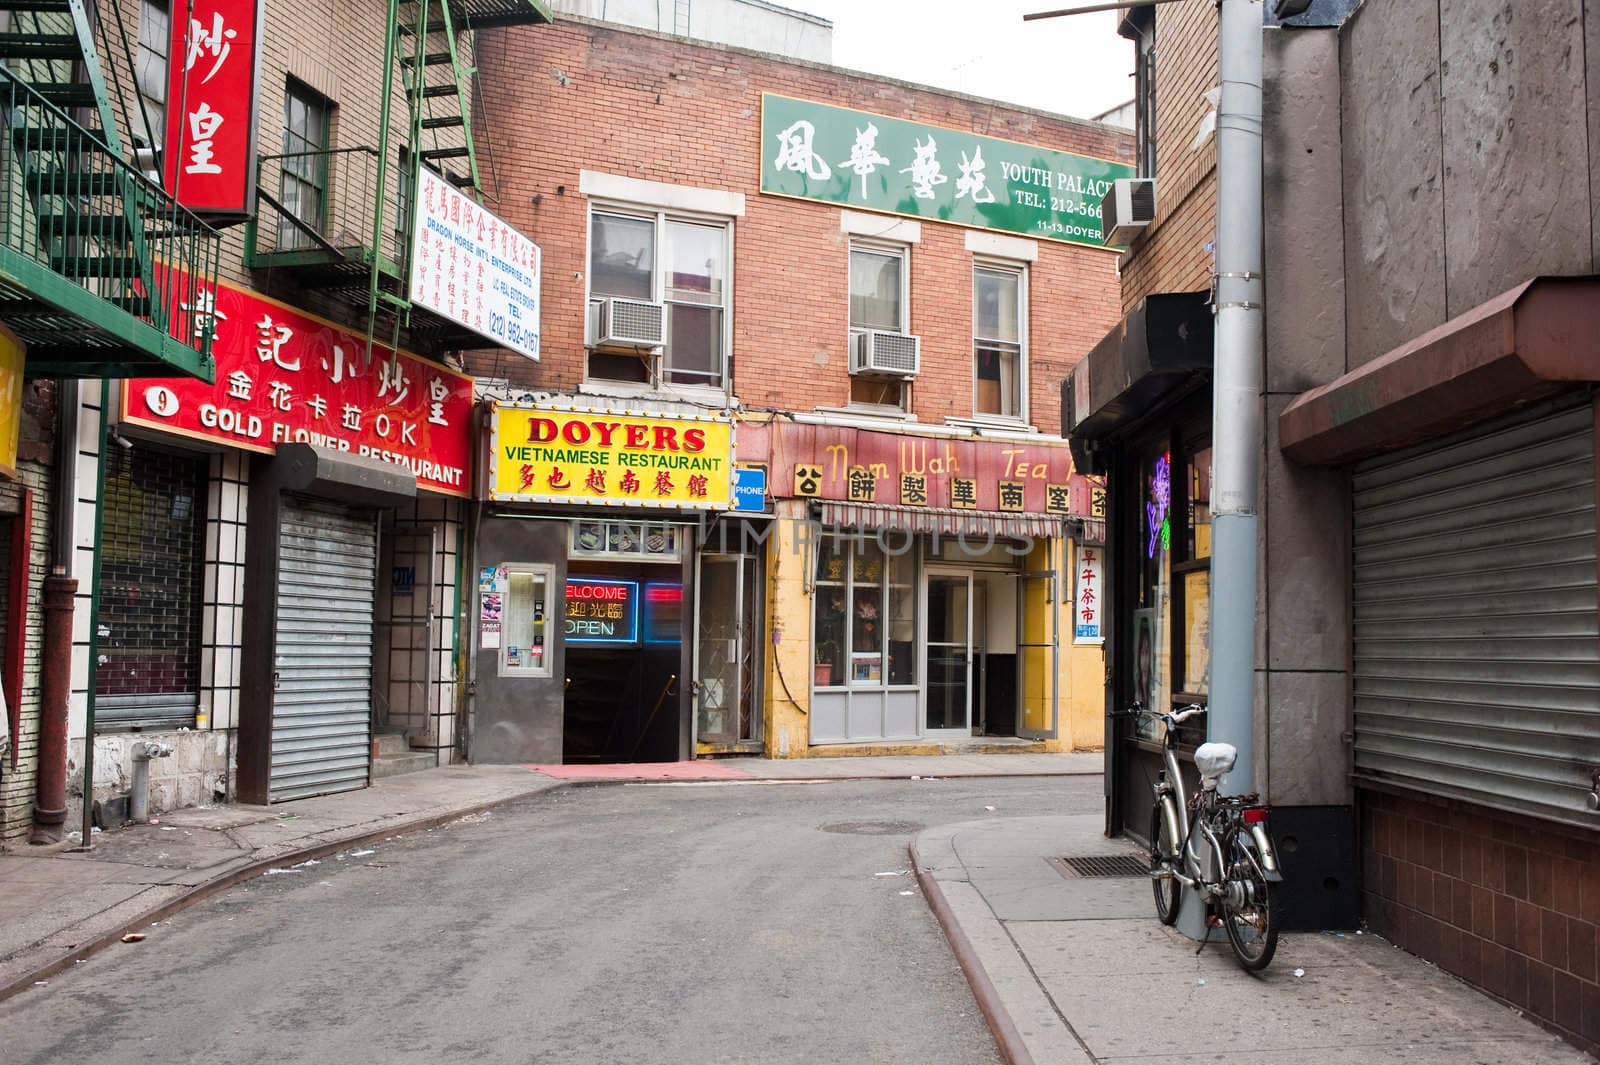 Doyer's corner, Chinatown, New York City by rongreer